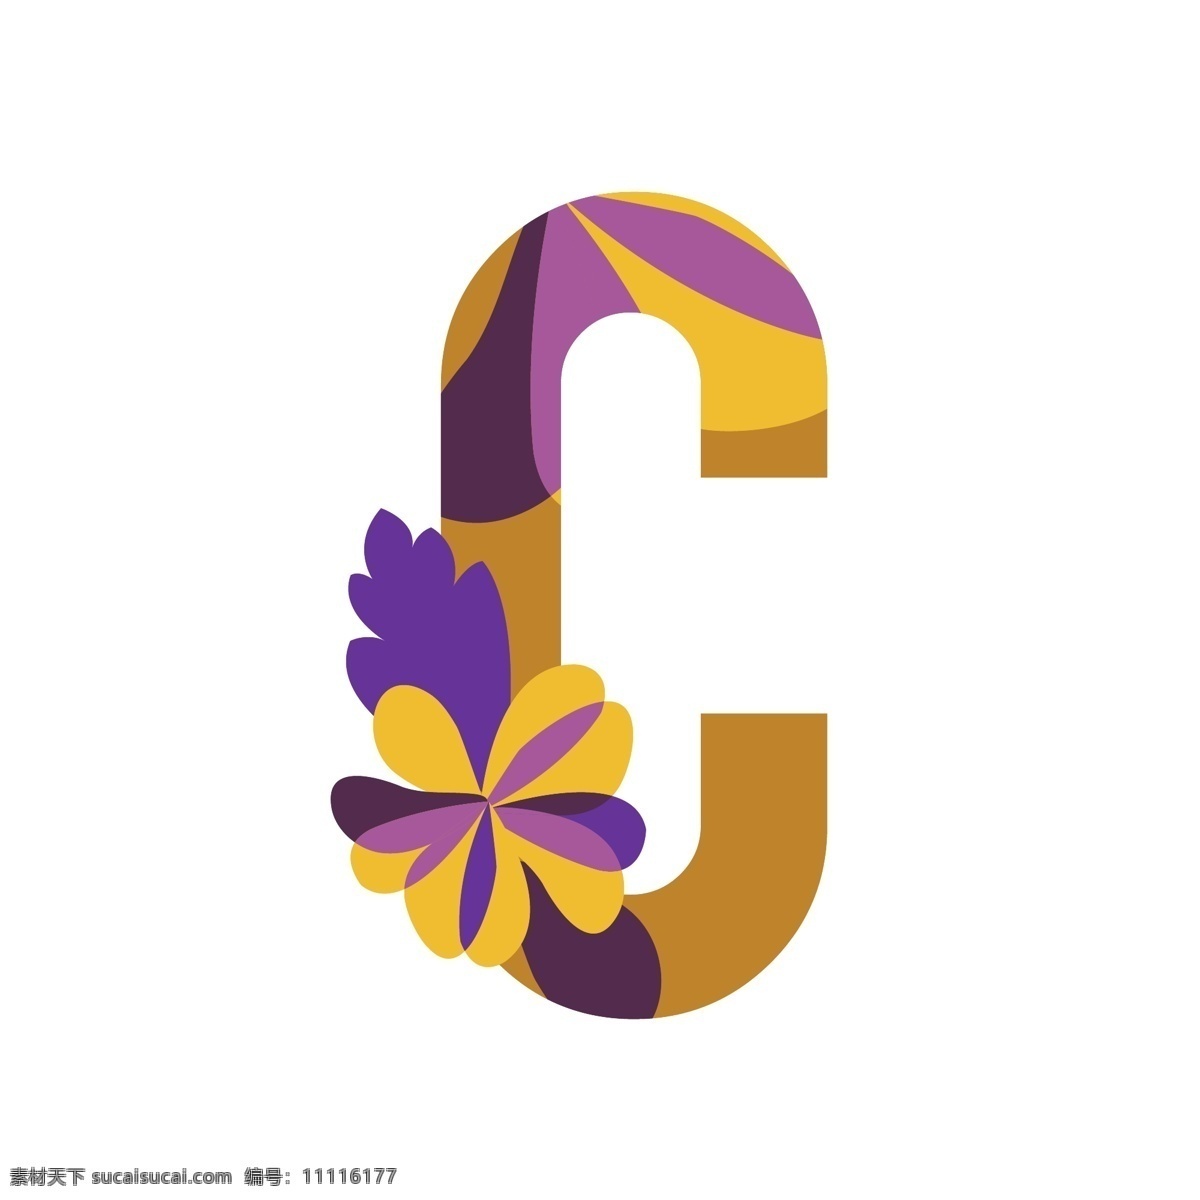 花卉 图案 字母 logo 模板 c 花卉图案 logo模板